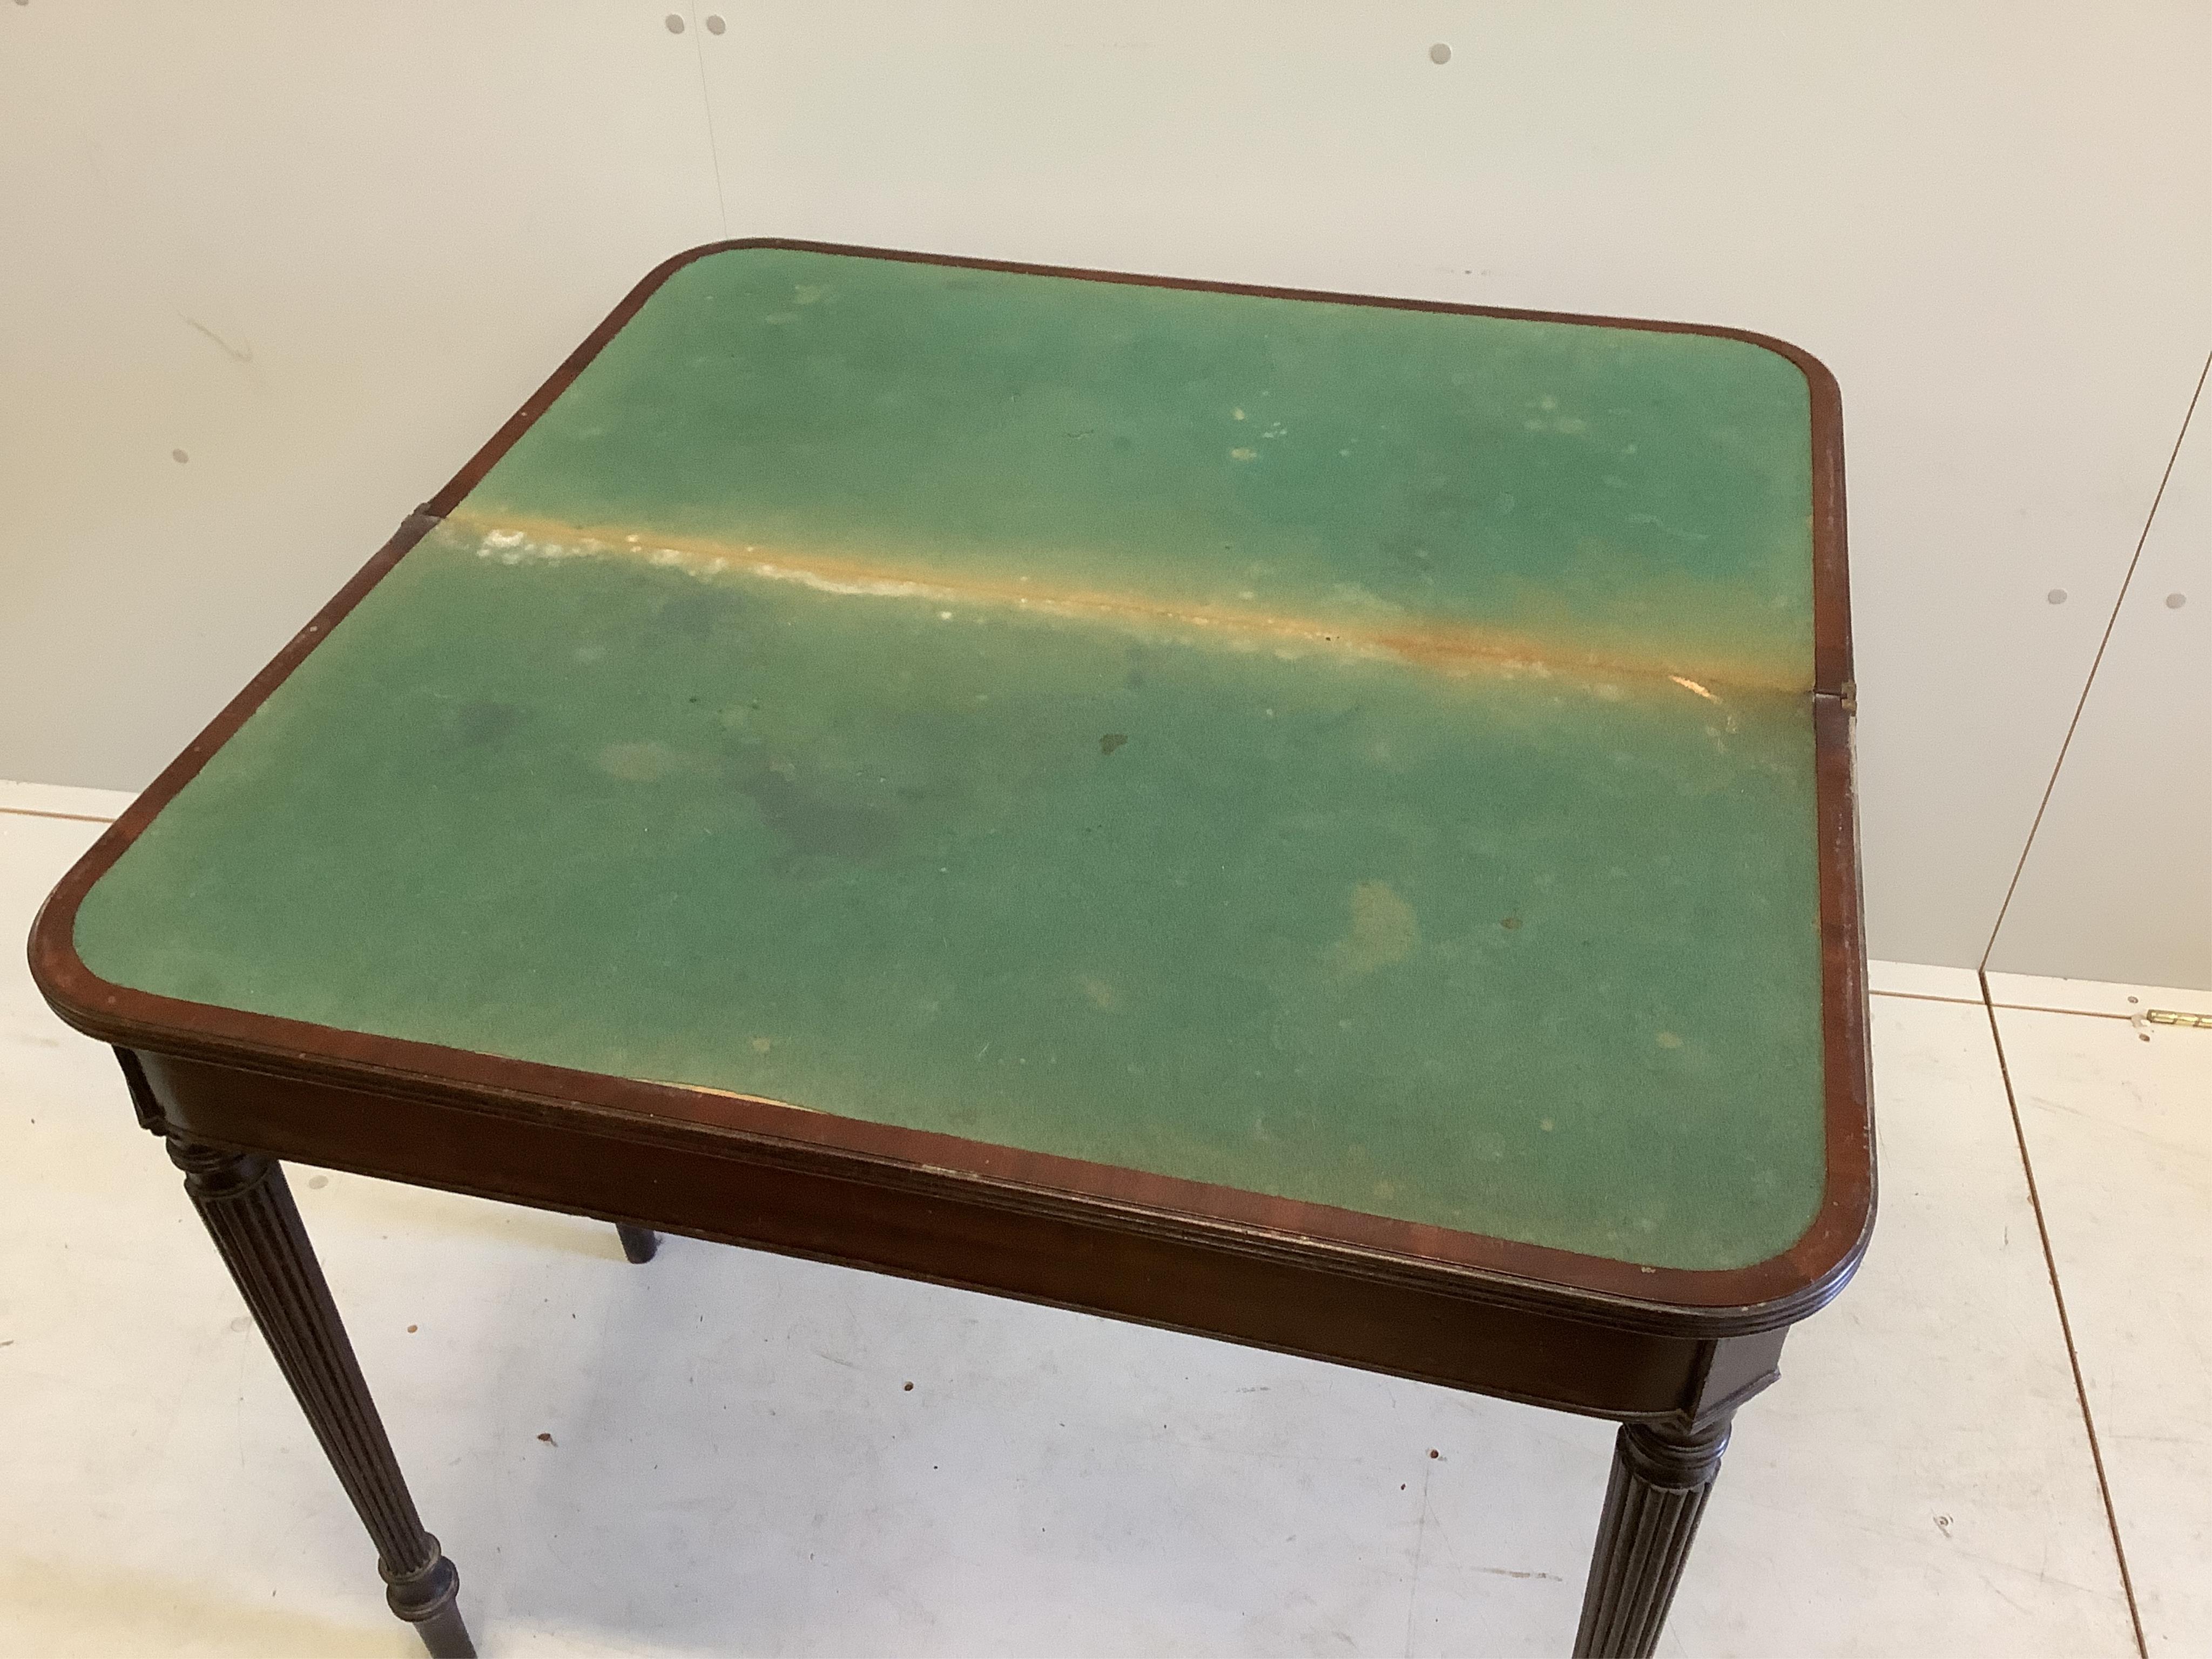 A Regency mahogany folding card table, width 92cm, depth 46cm, height 76cm. Condition - fair